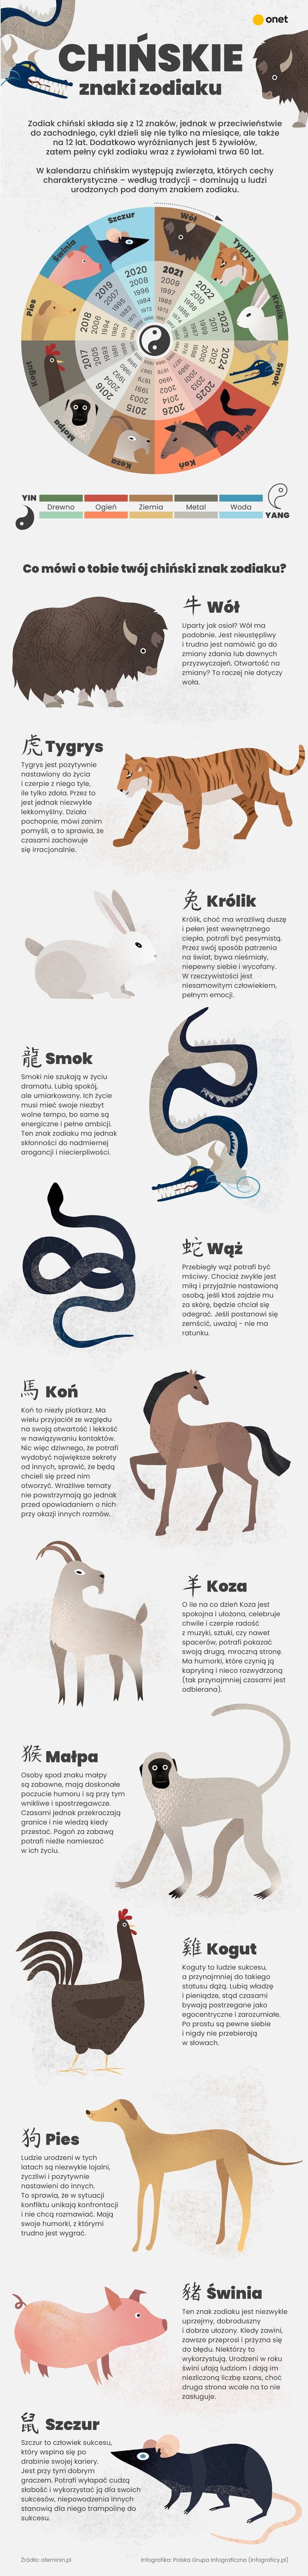 Chiński znak zodiakuj